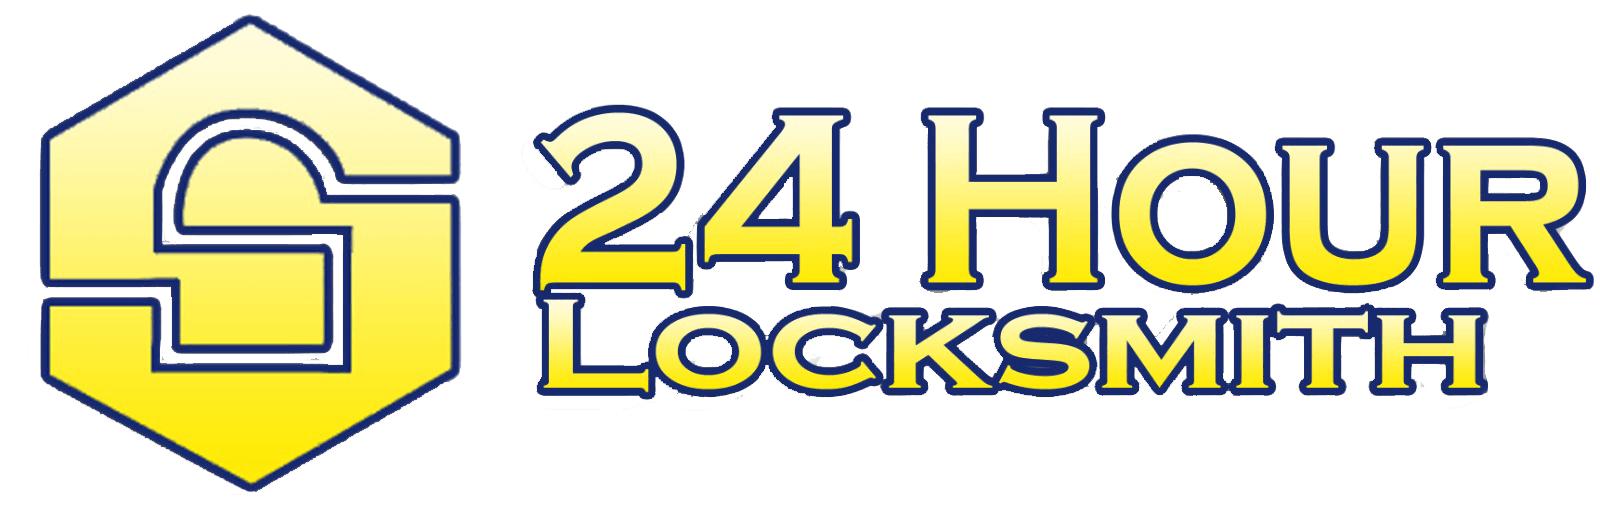 24 Hour Locksmith in El Paso, TX